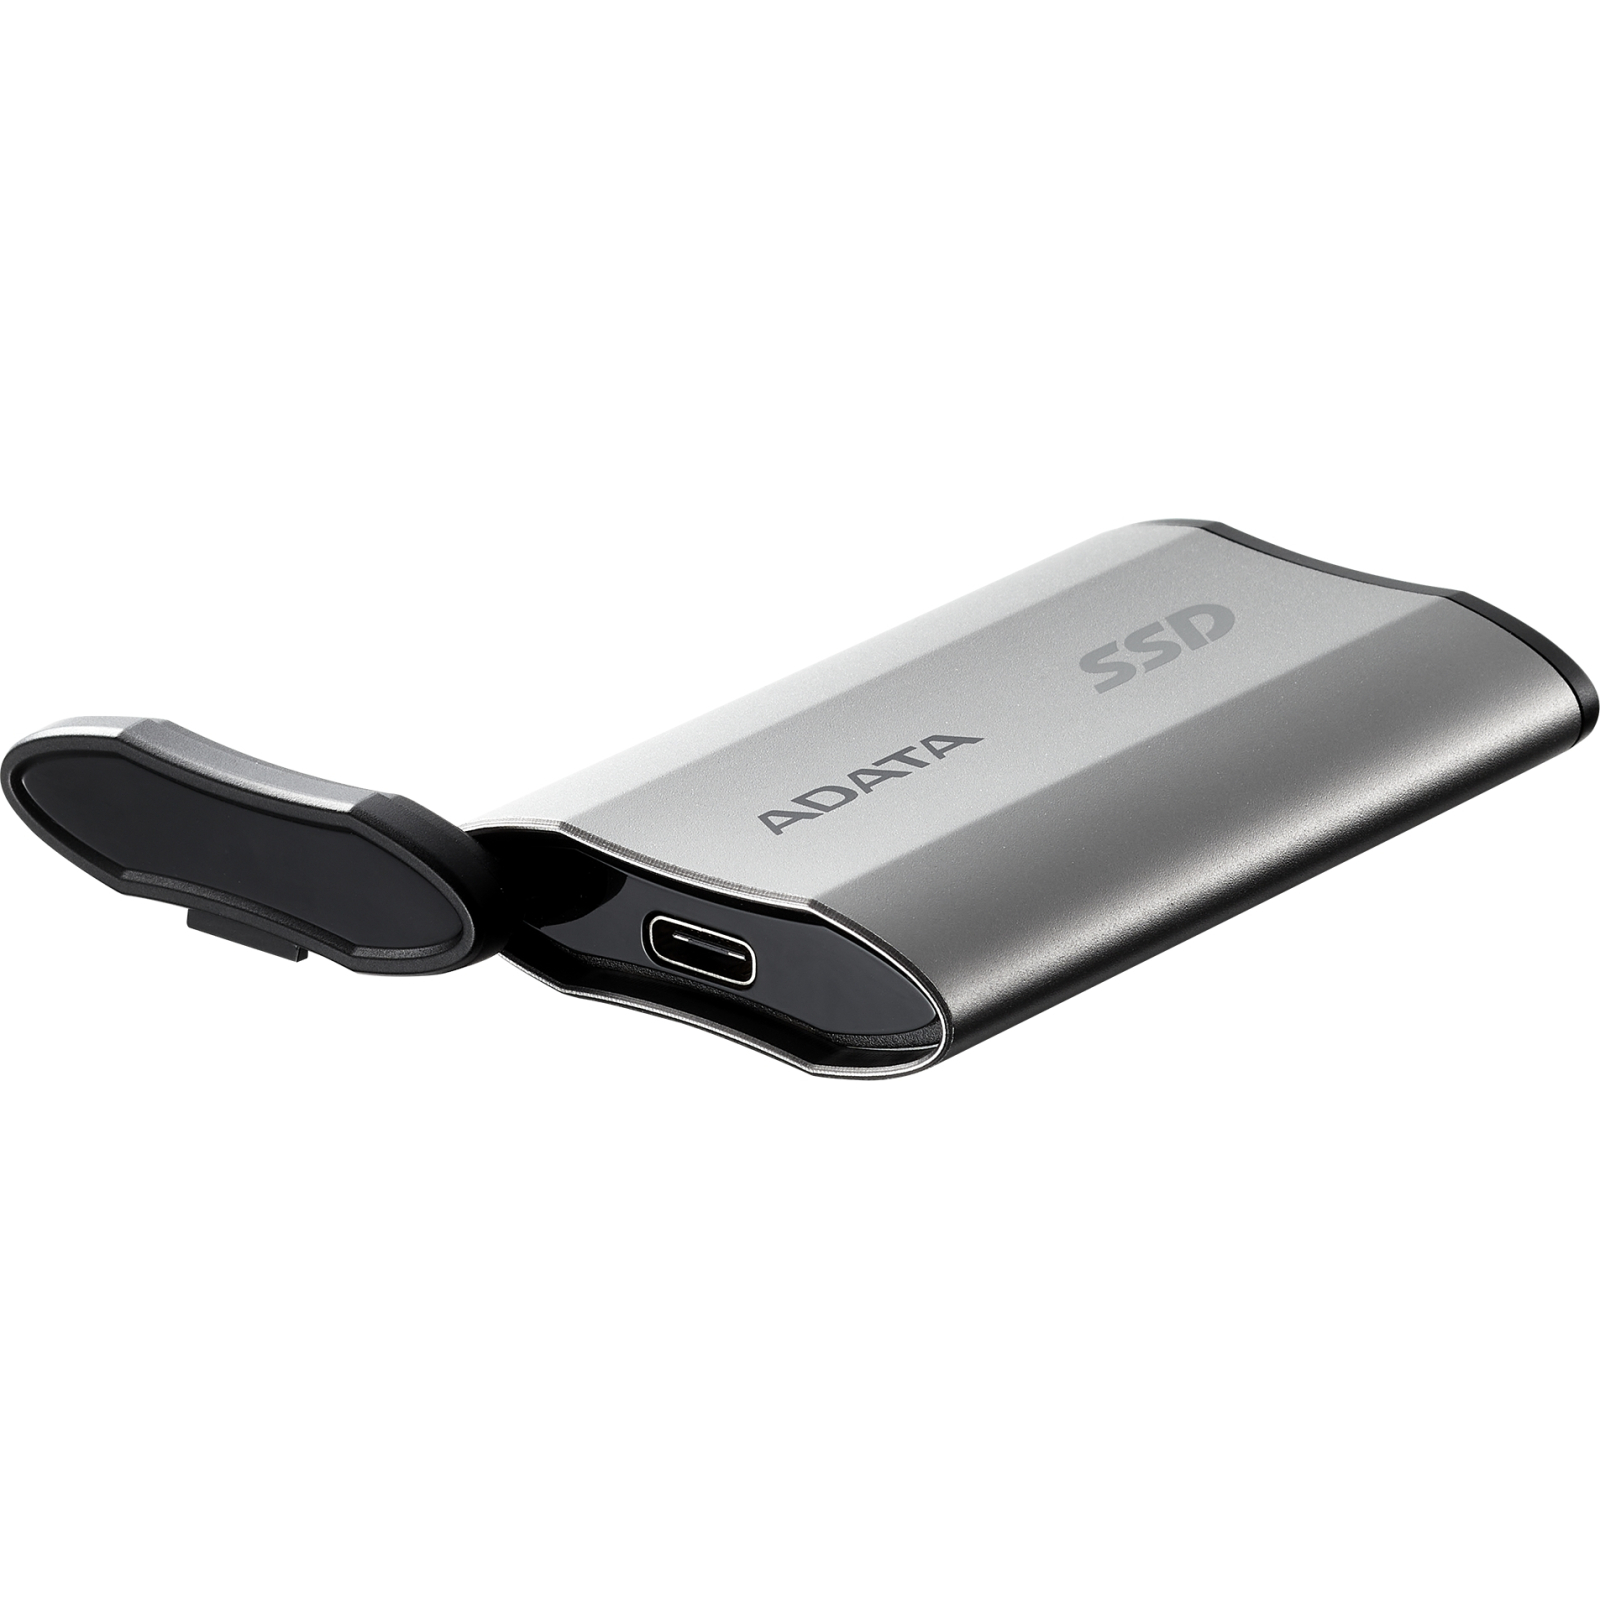 Накопичувач SSD USB 3.2 4TB ADATA (SD810-4000G-CSG) зображення 5